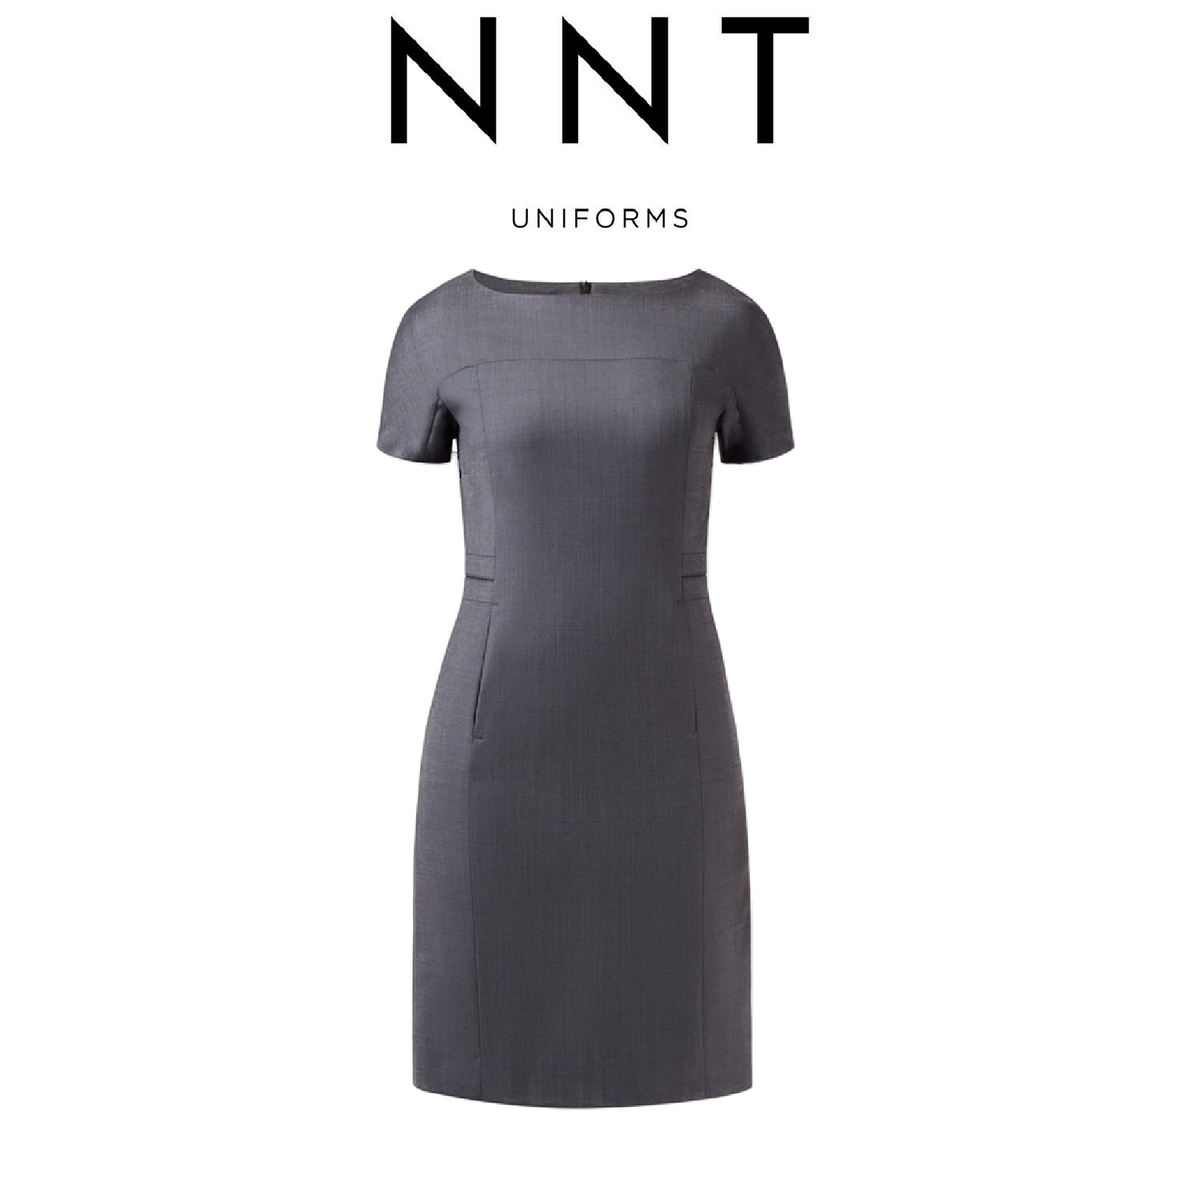 NNT Womens Sharkskin Short Sleeve Dress Classic Fit Stretch Knee Length CAT6BE